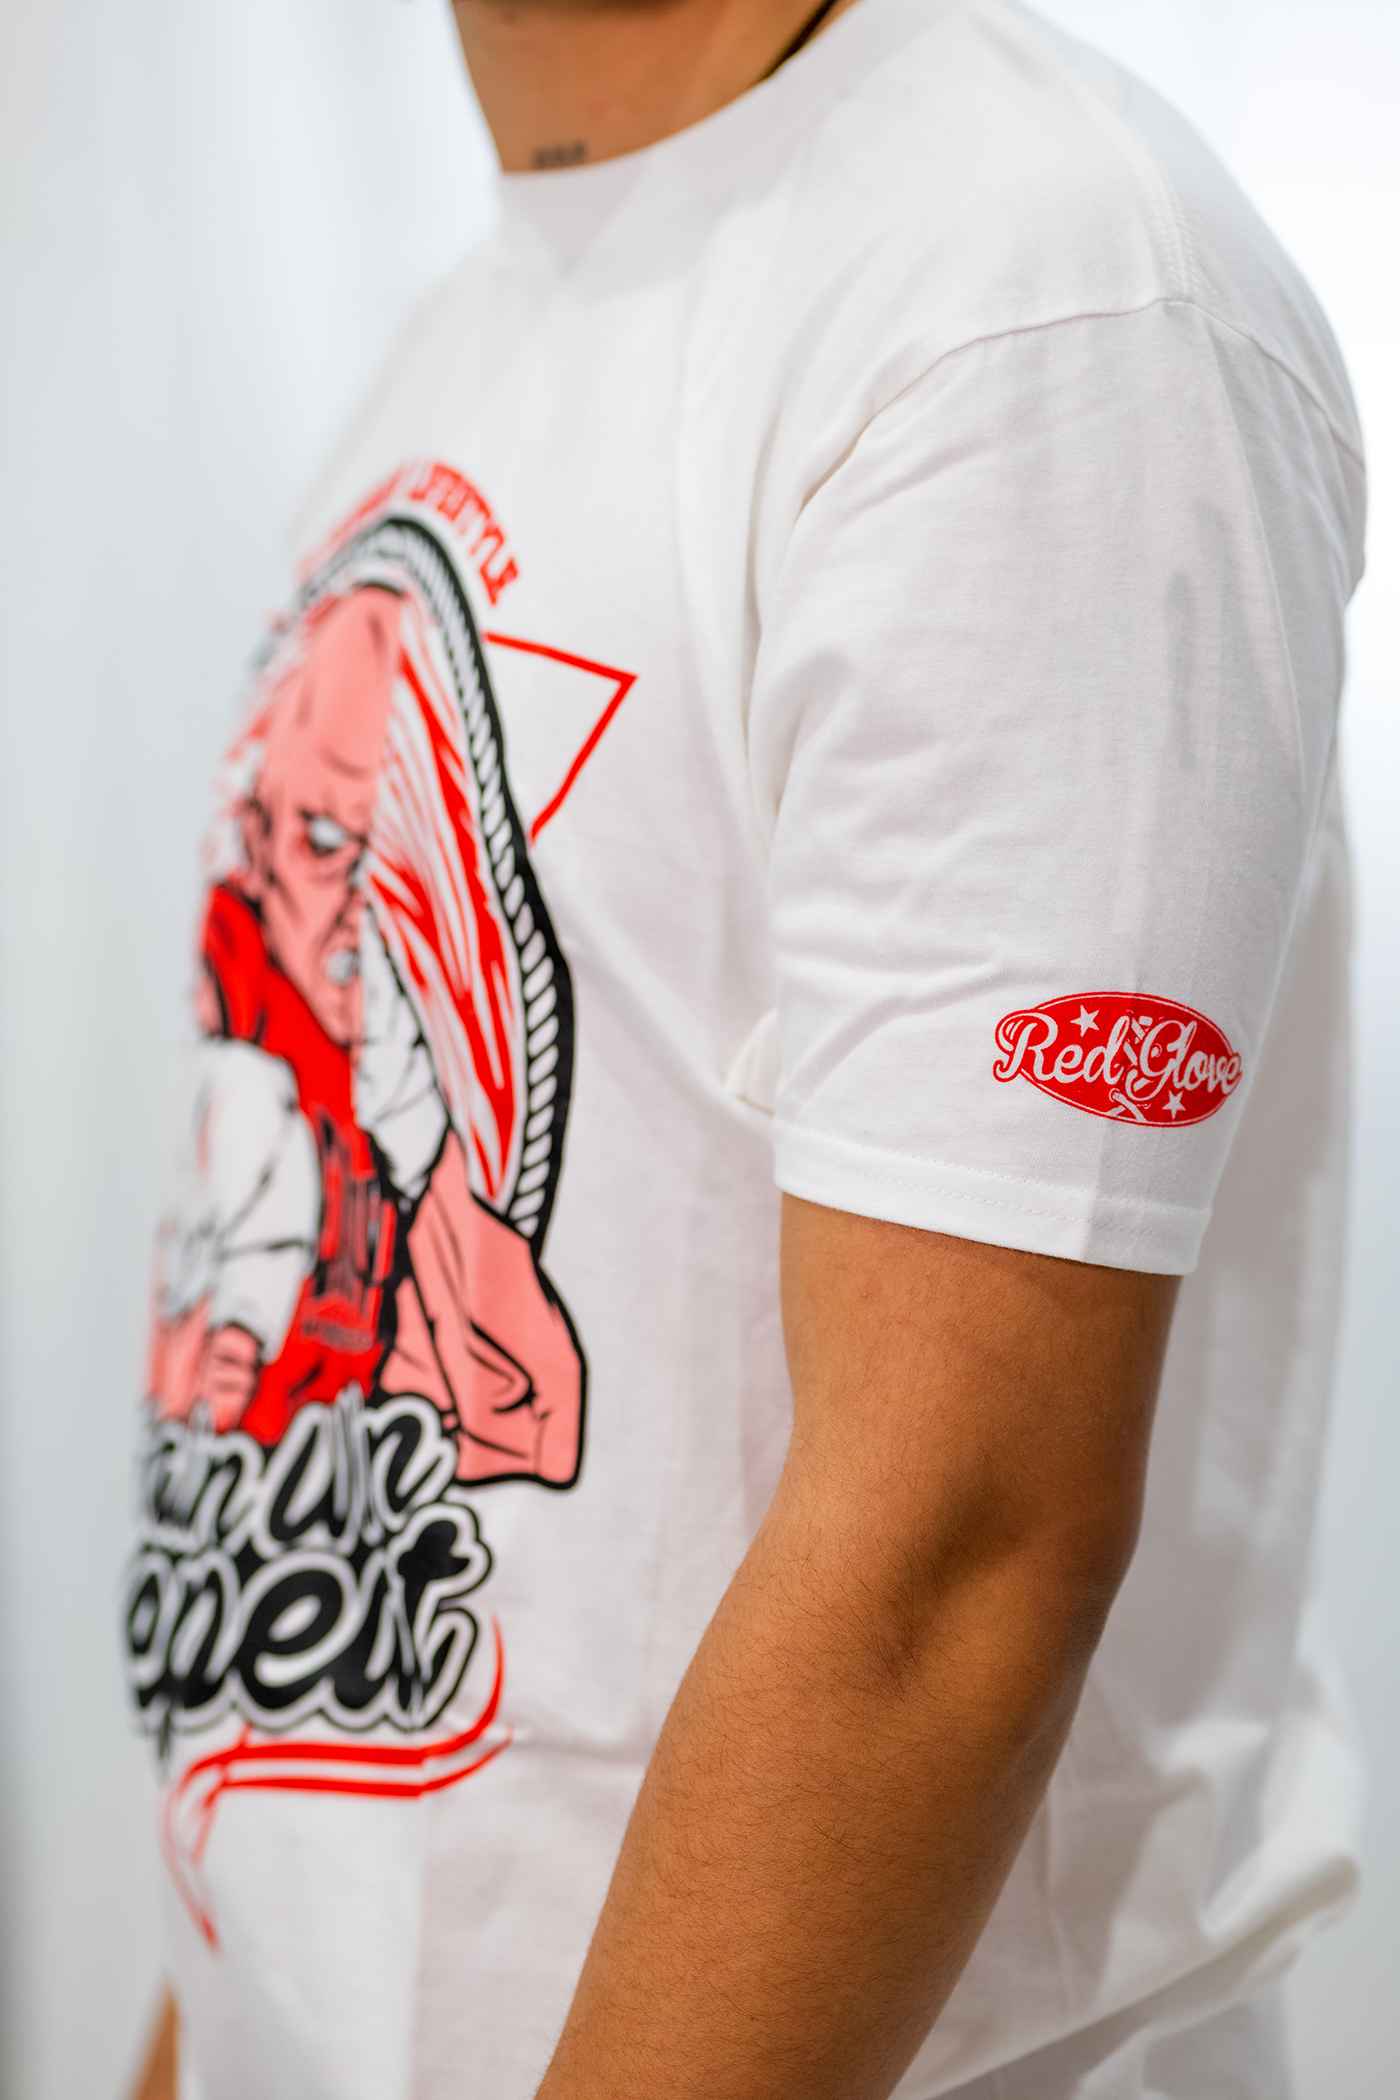 Camiseta Redglove MMA